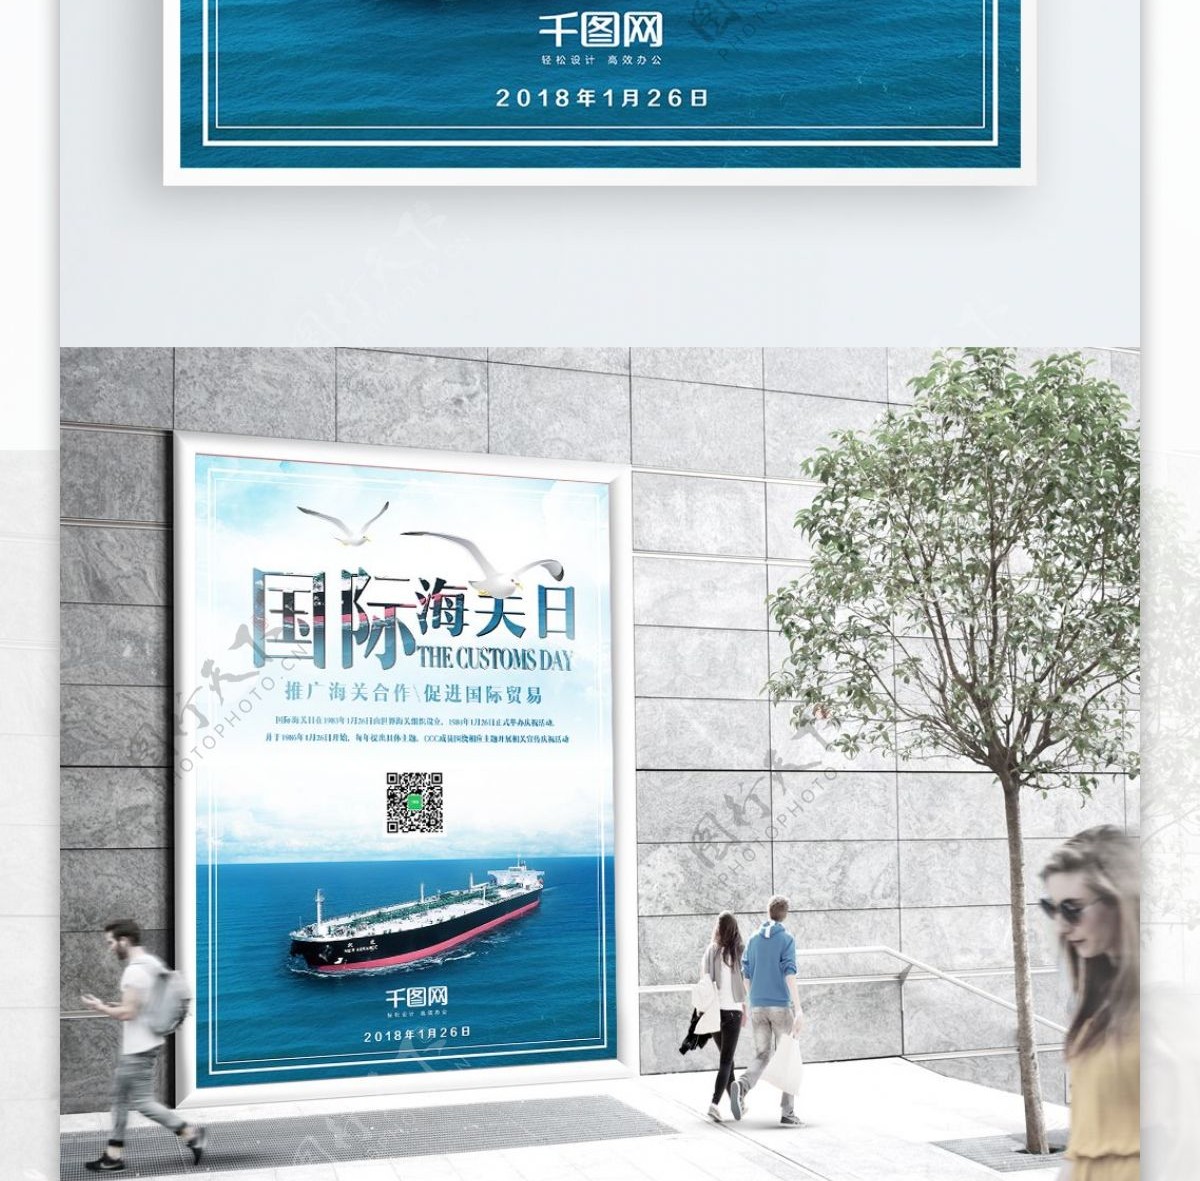 国际海关日节日宣传海报设计